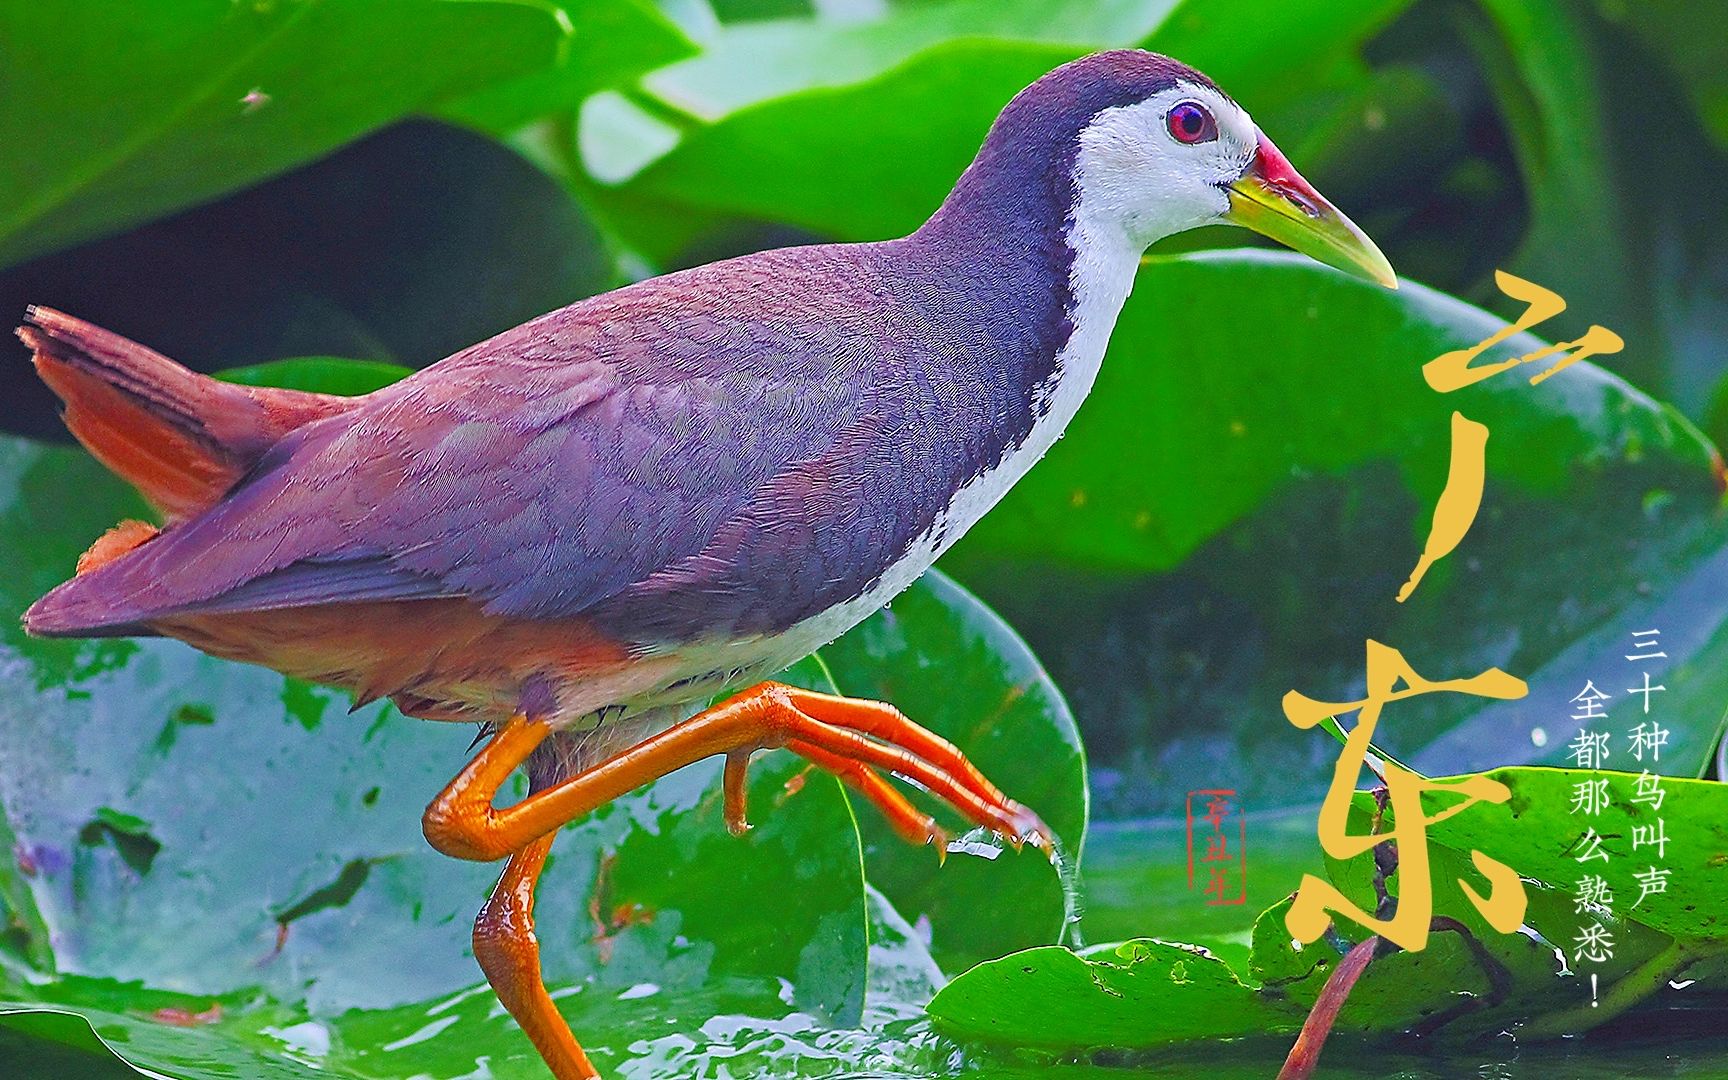 广东常见鸟类30种,这些鸟叫声你肯定很熟悉!